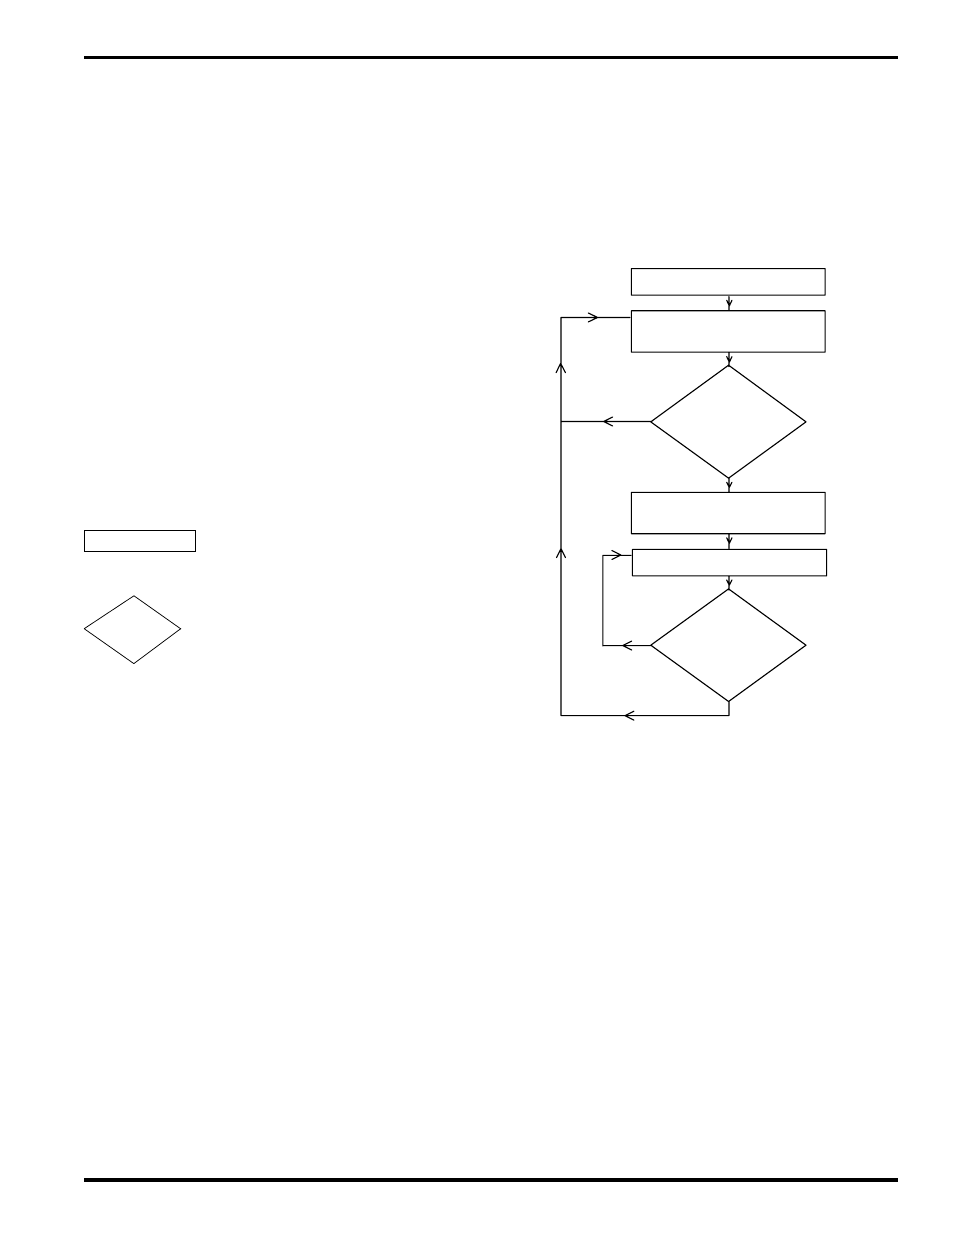 Mode 1 logic flow chart, Mode 1 logic flow chart appendix a ...